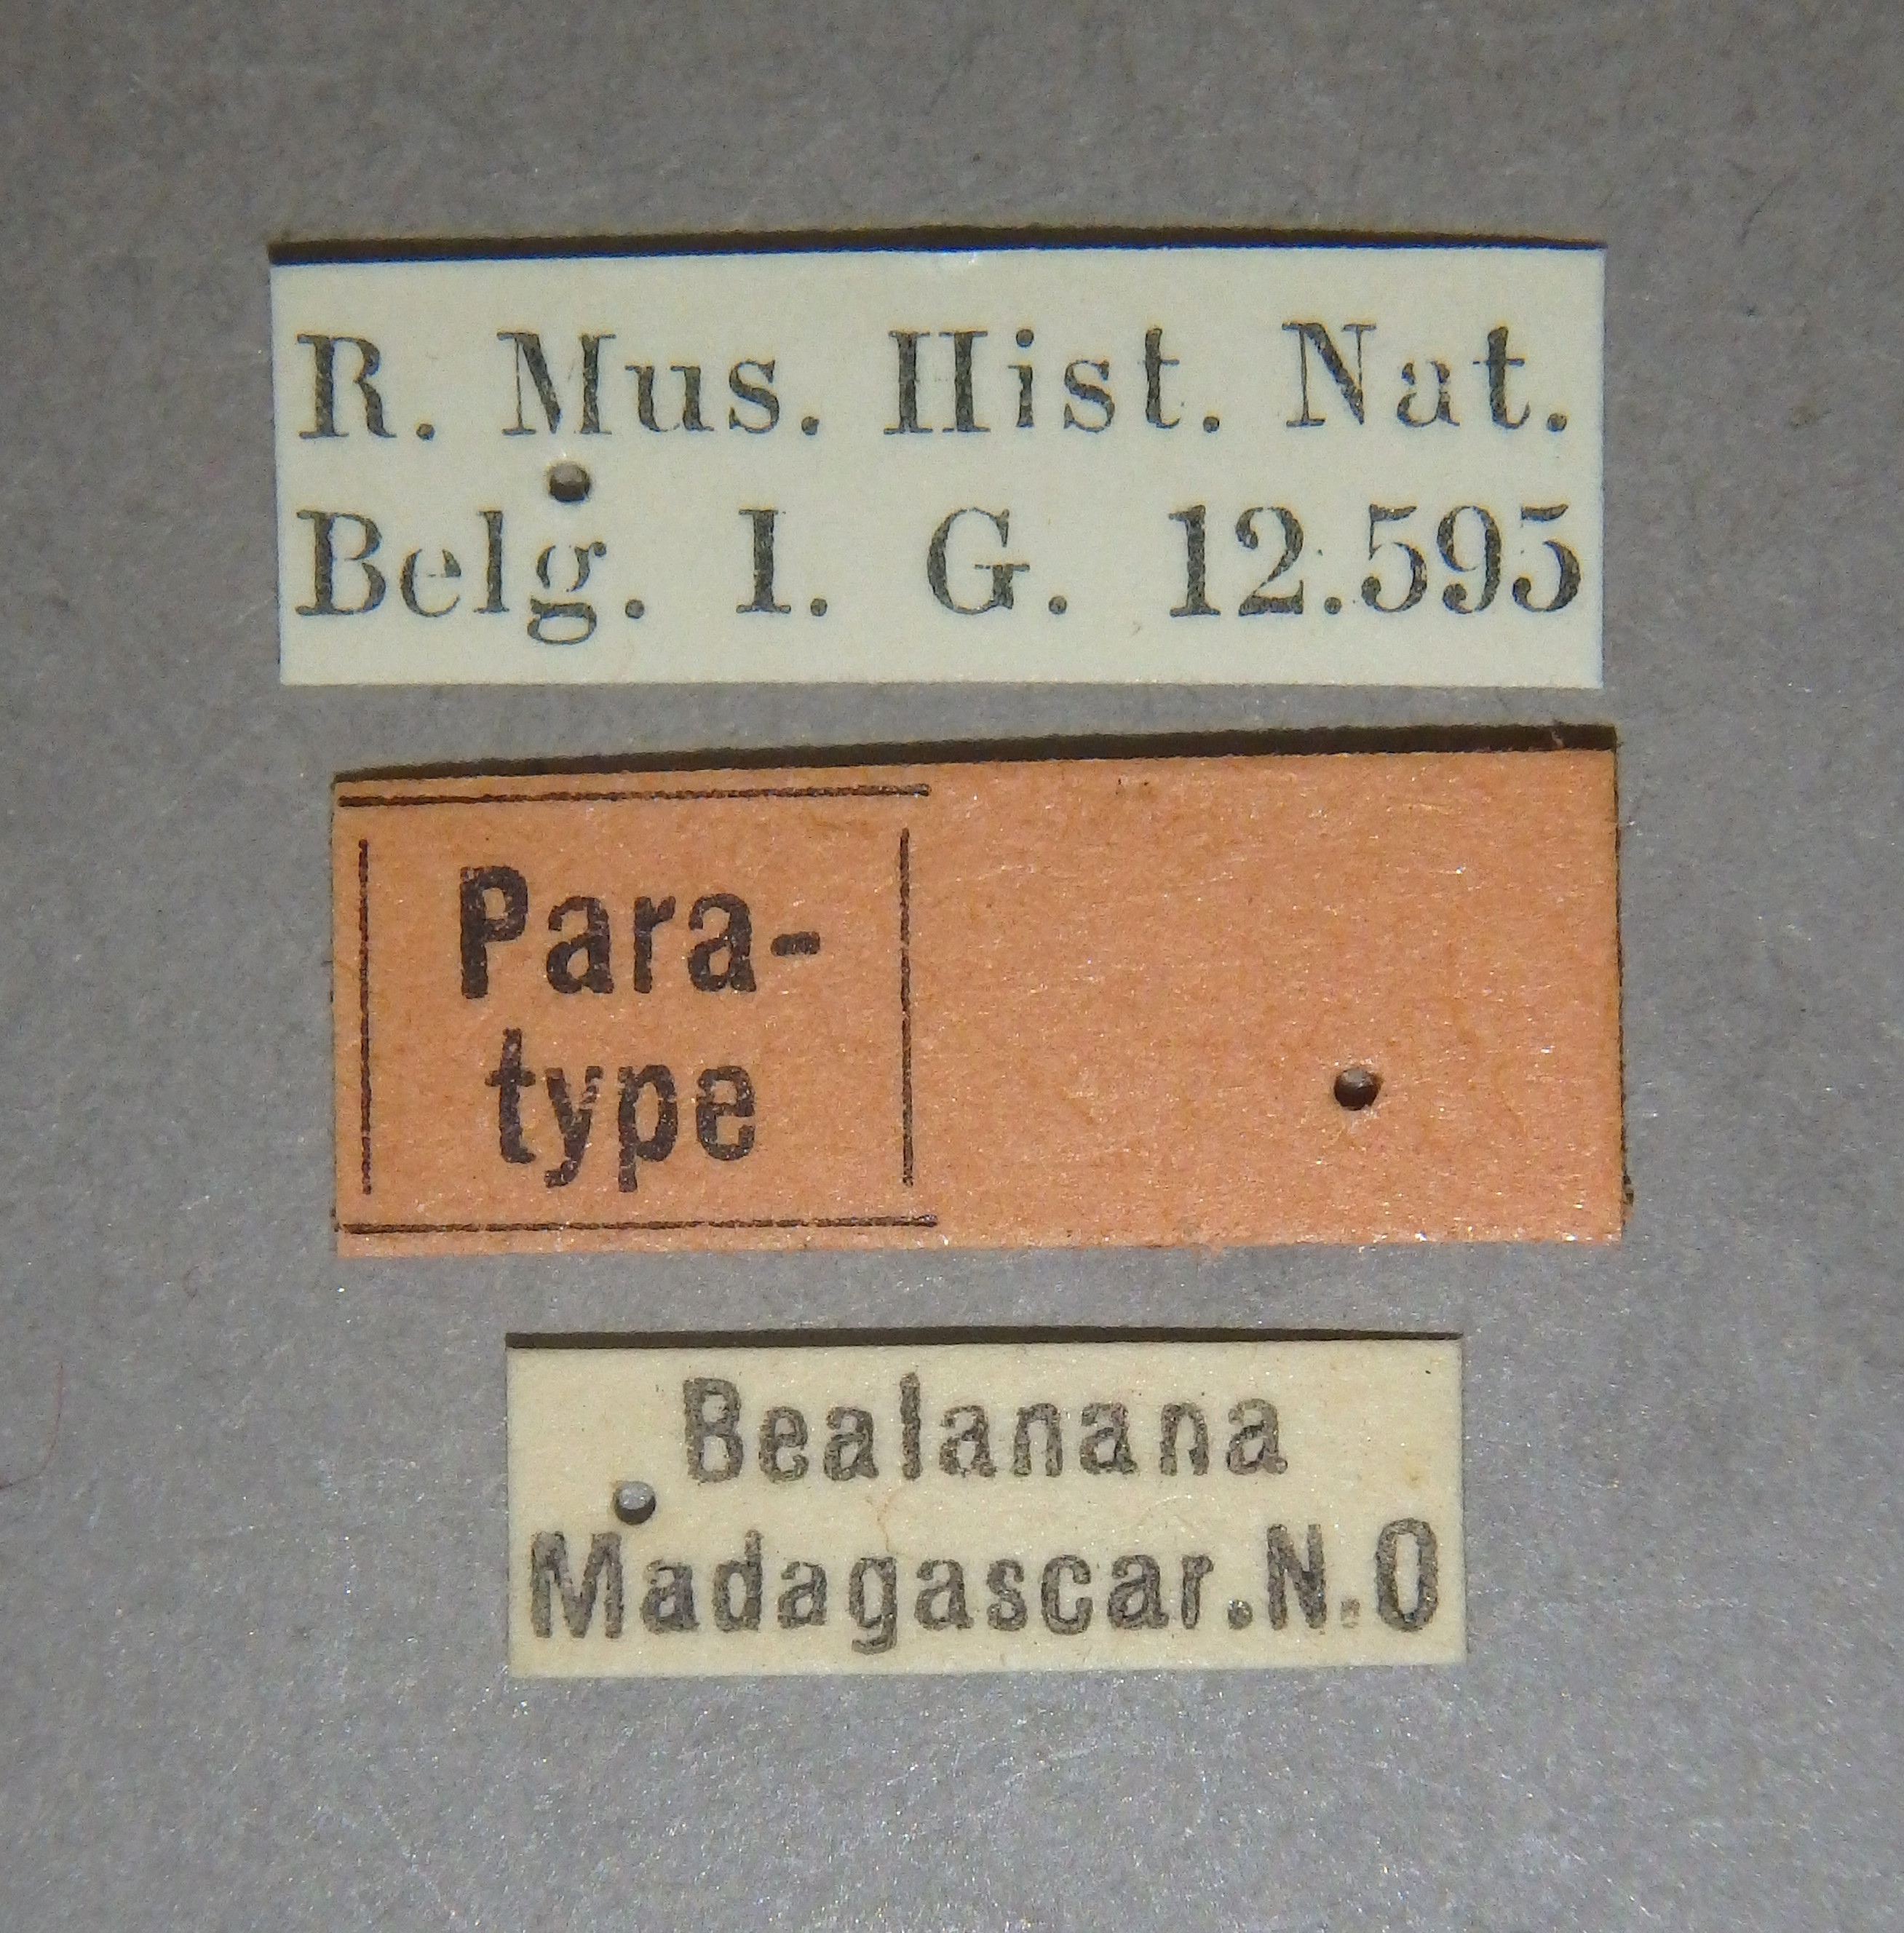 Liostraca humilis pt Lb.jpg